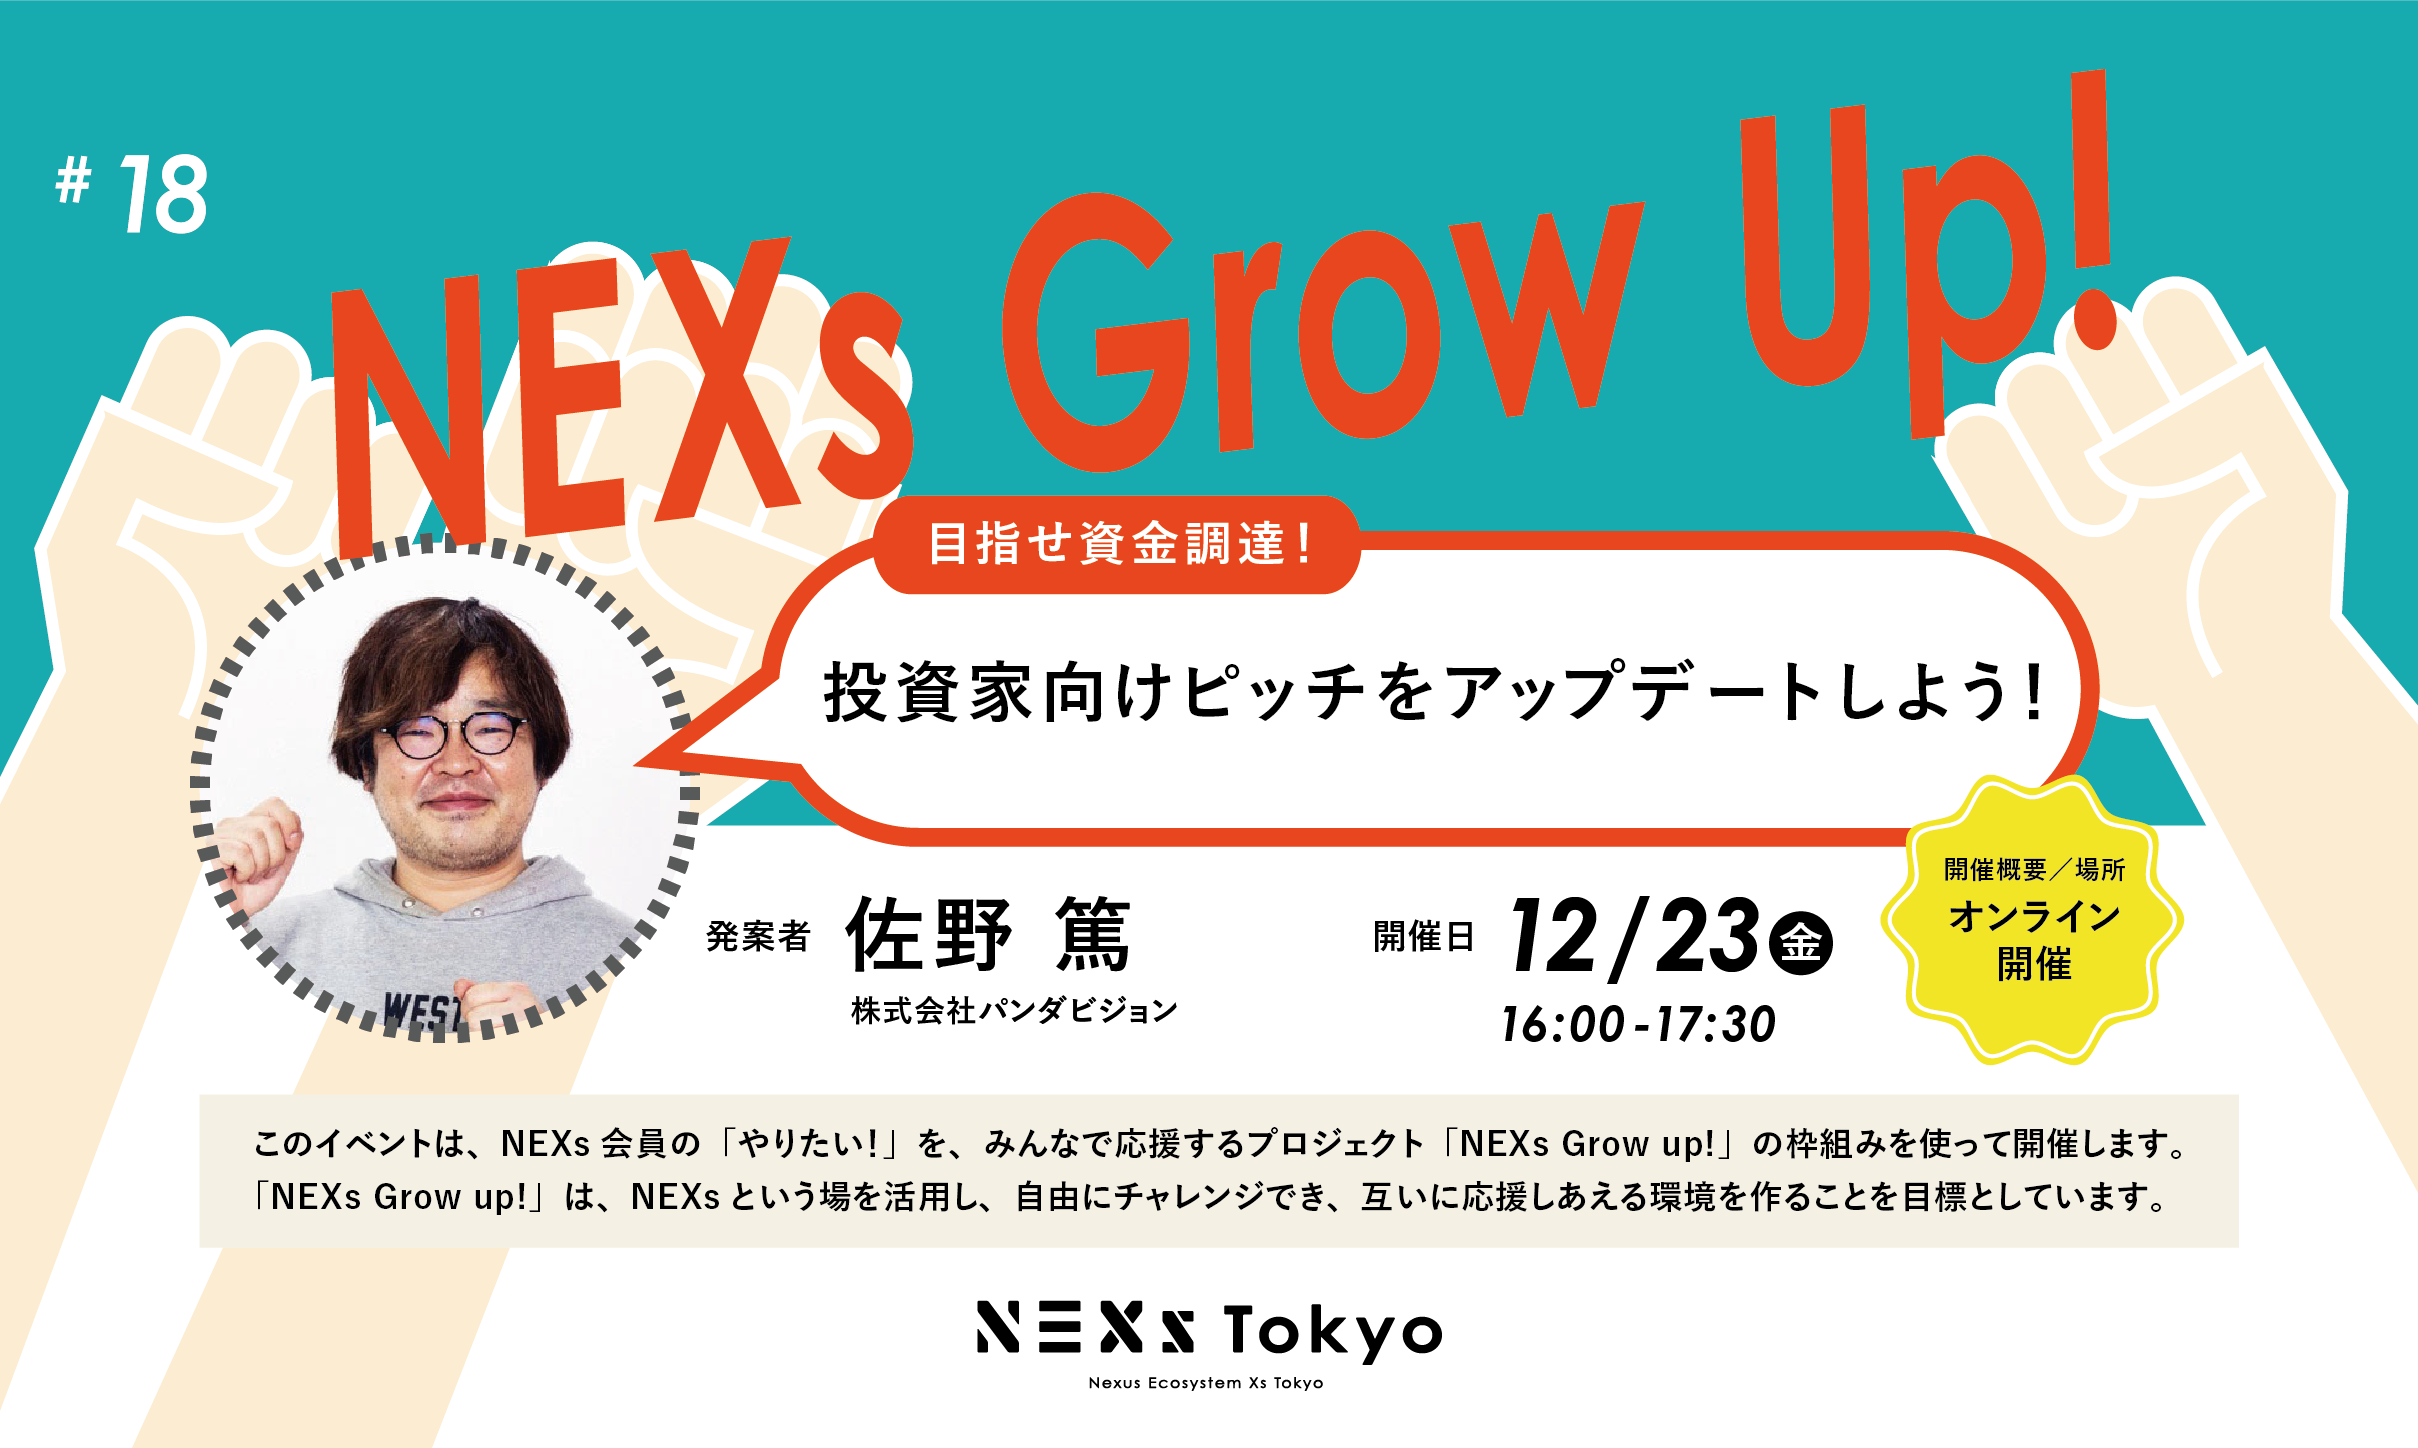 NEXs Grow Up!vol.18 目指せ資金調達！投資家向けピッチをアップデートしよう！